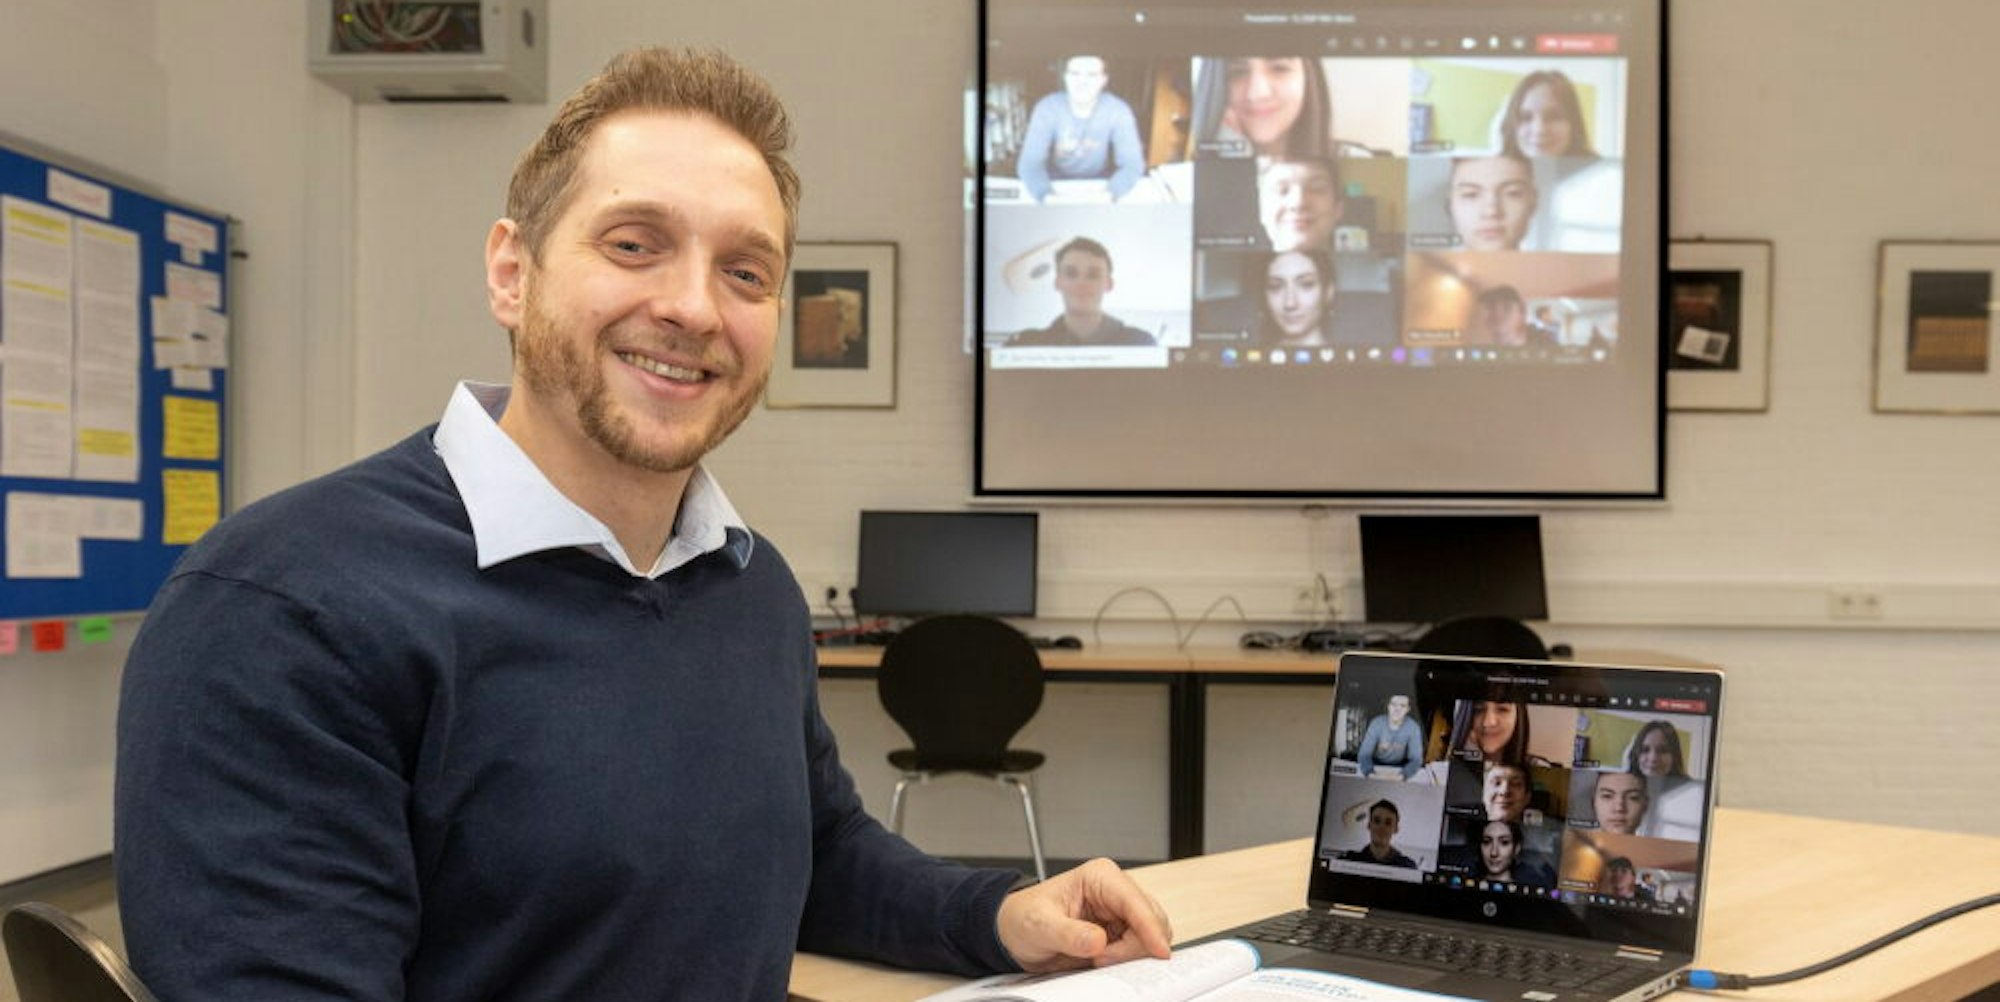 Führt den Projektkurs „Gründerpreis“ und leitet die Videokonferenzen: Lehrer Niels Bartknecht betreut zehn Schüler meist online.